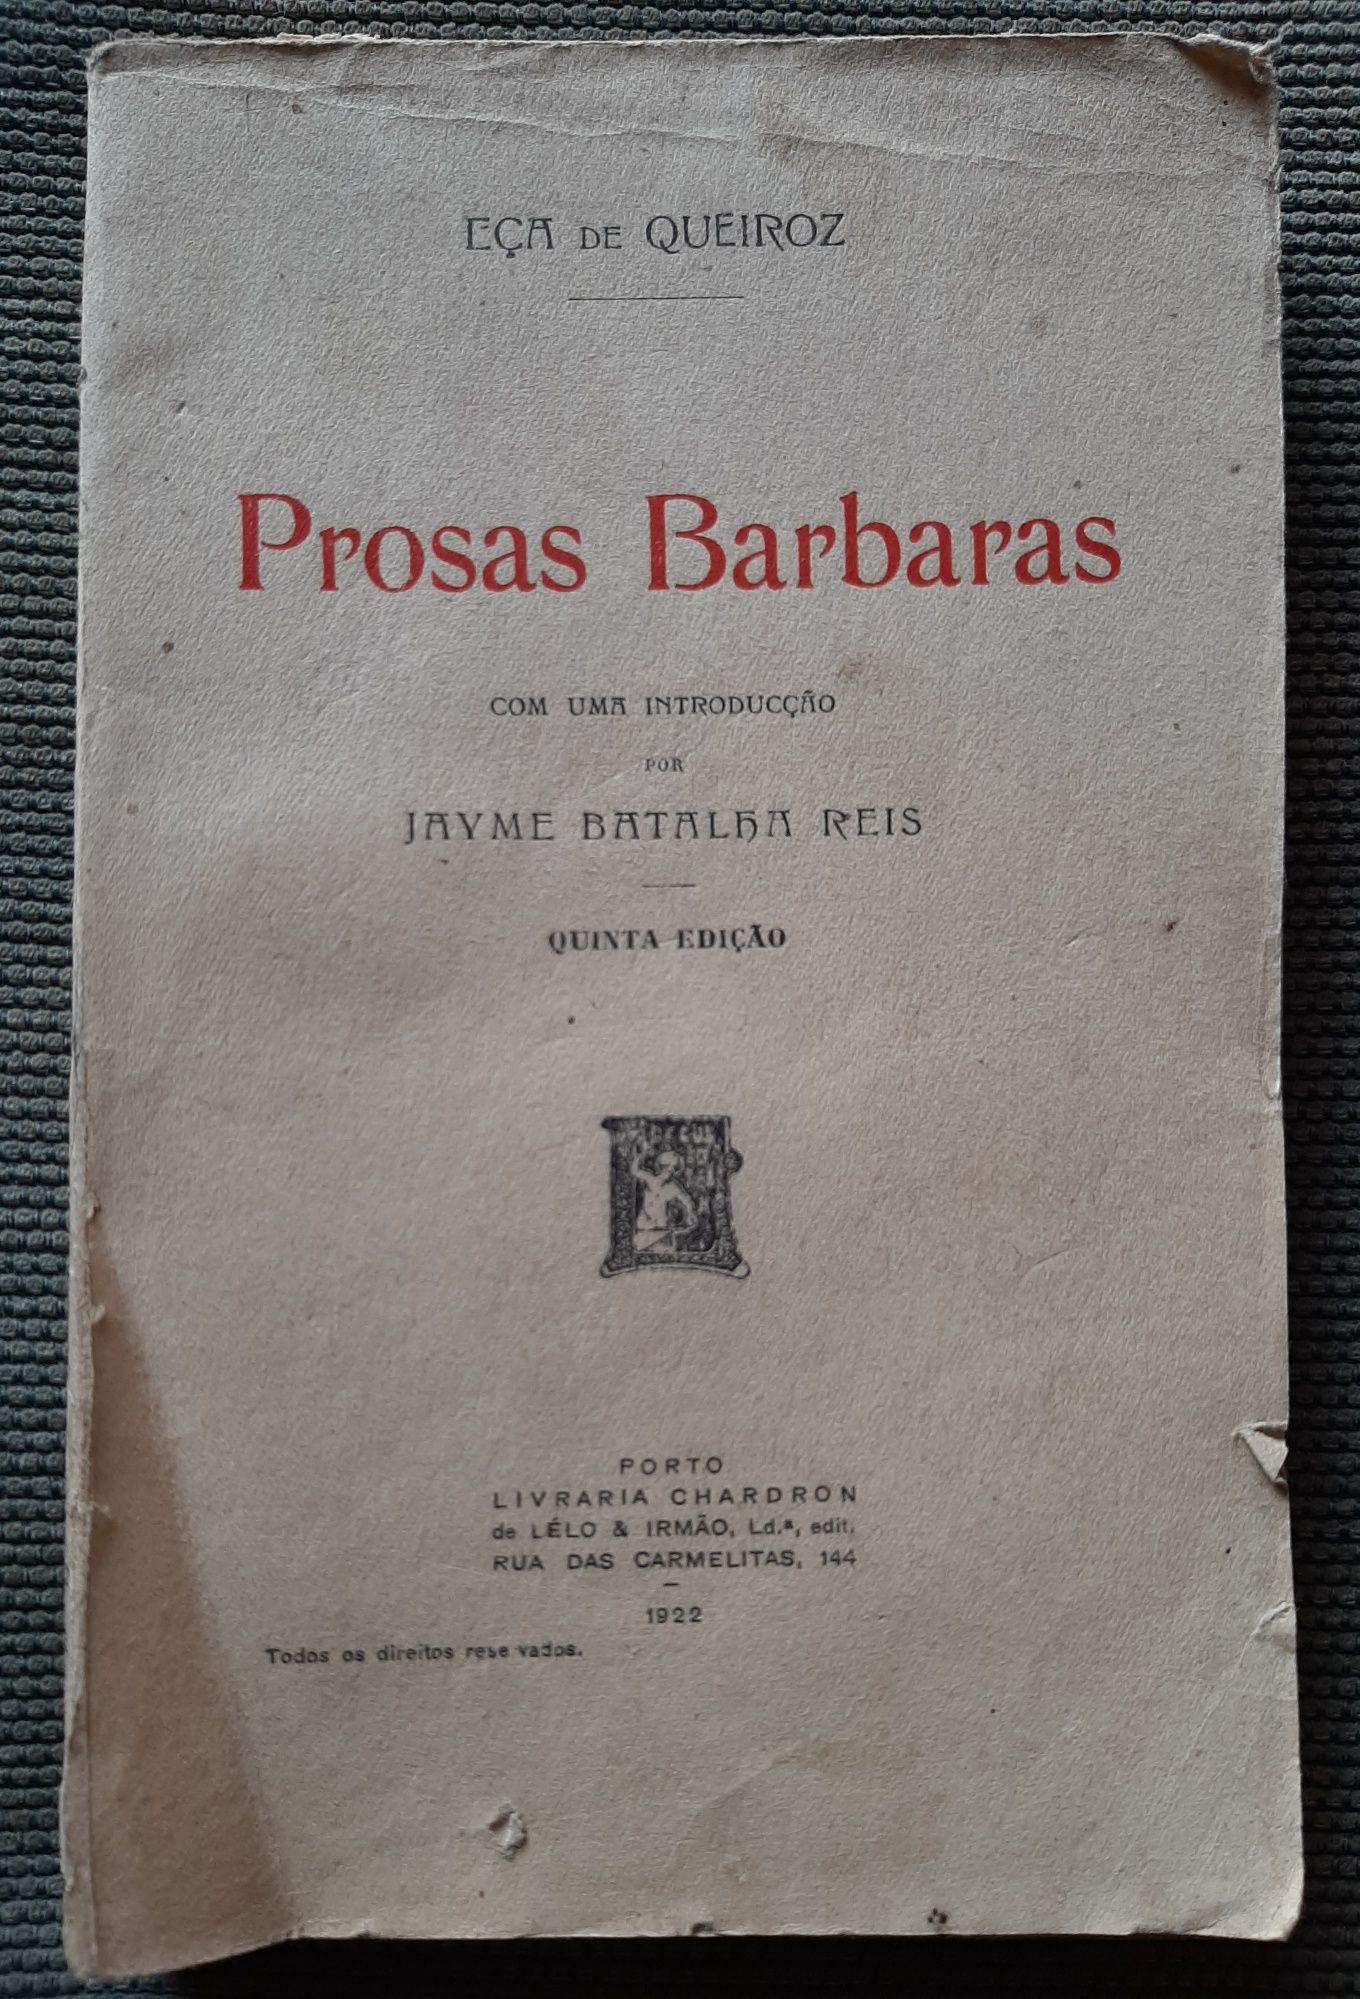 Prosas Barbaras - Eça de Queiroz 1922